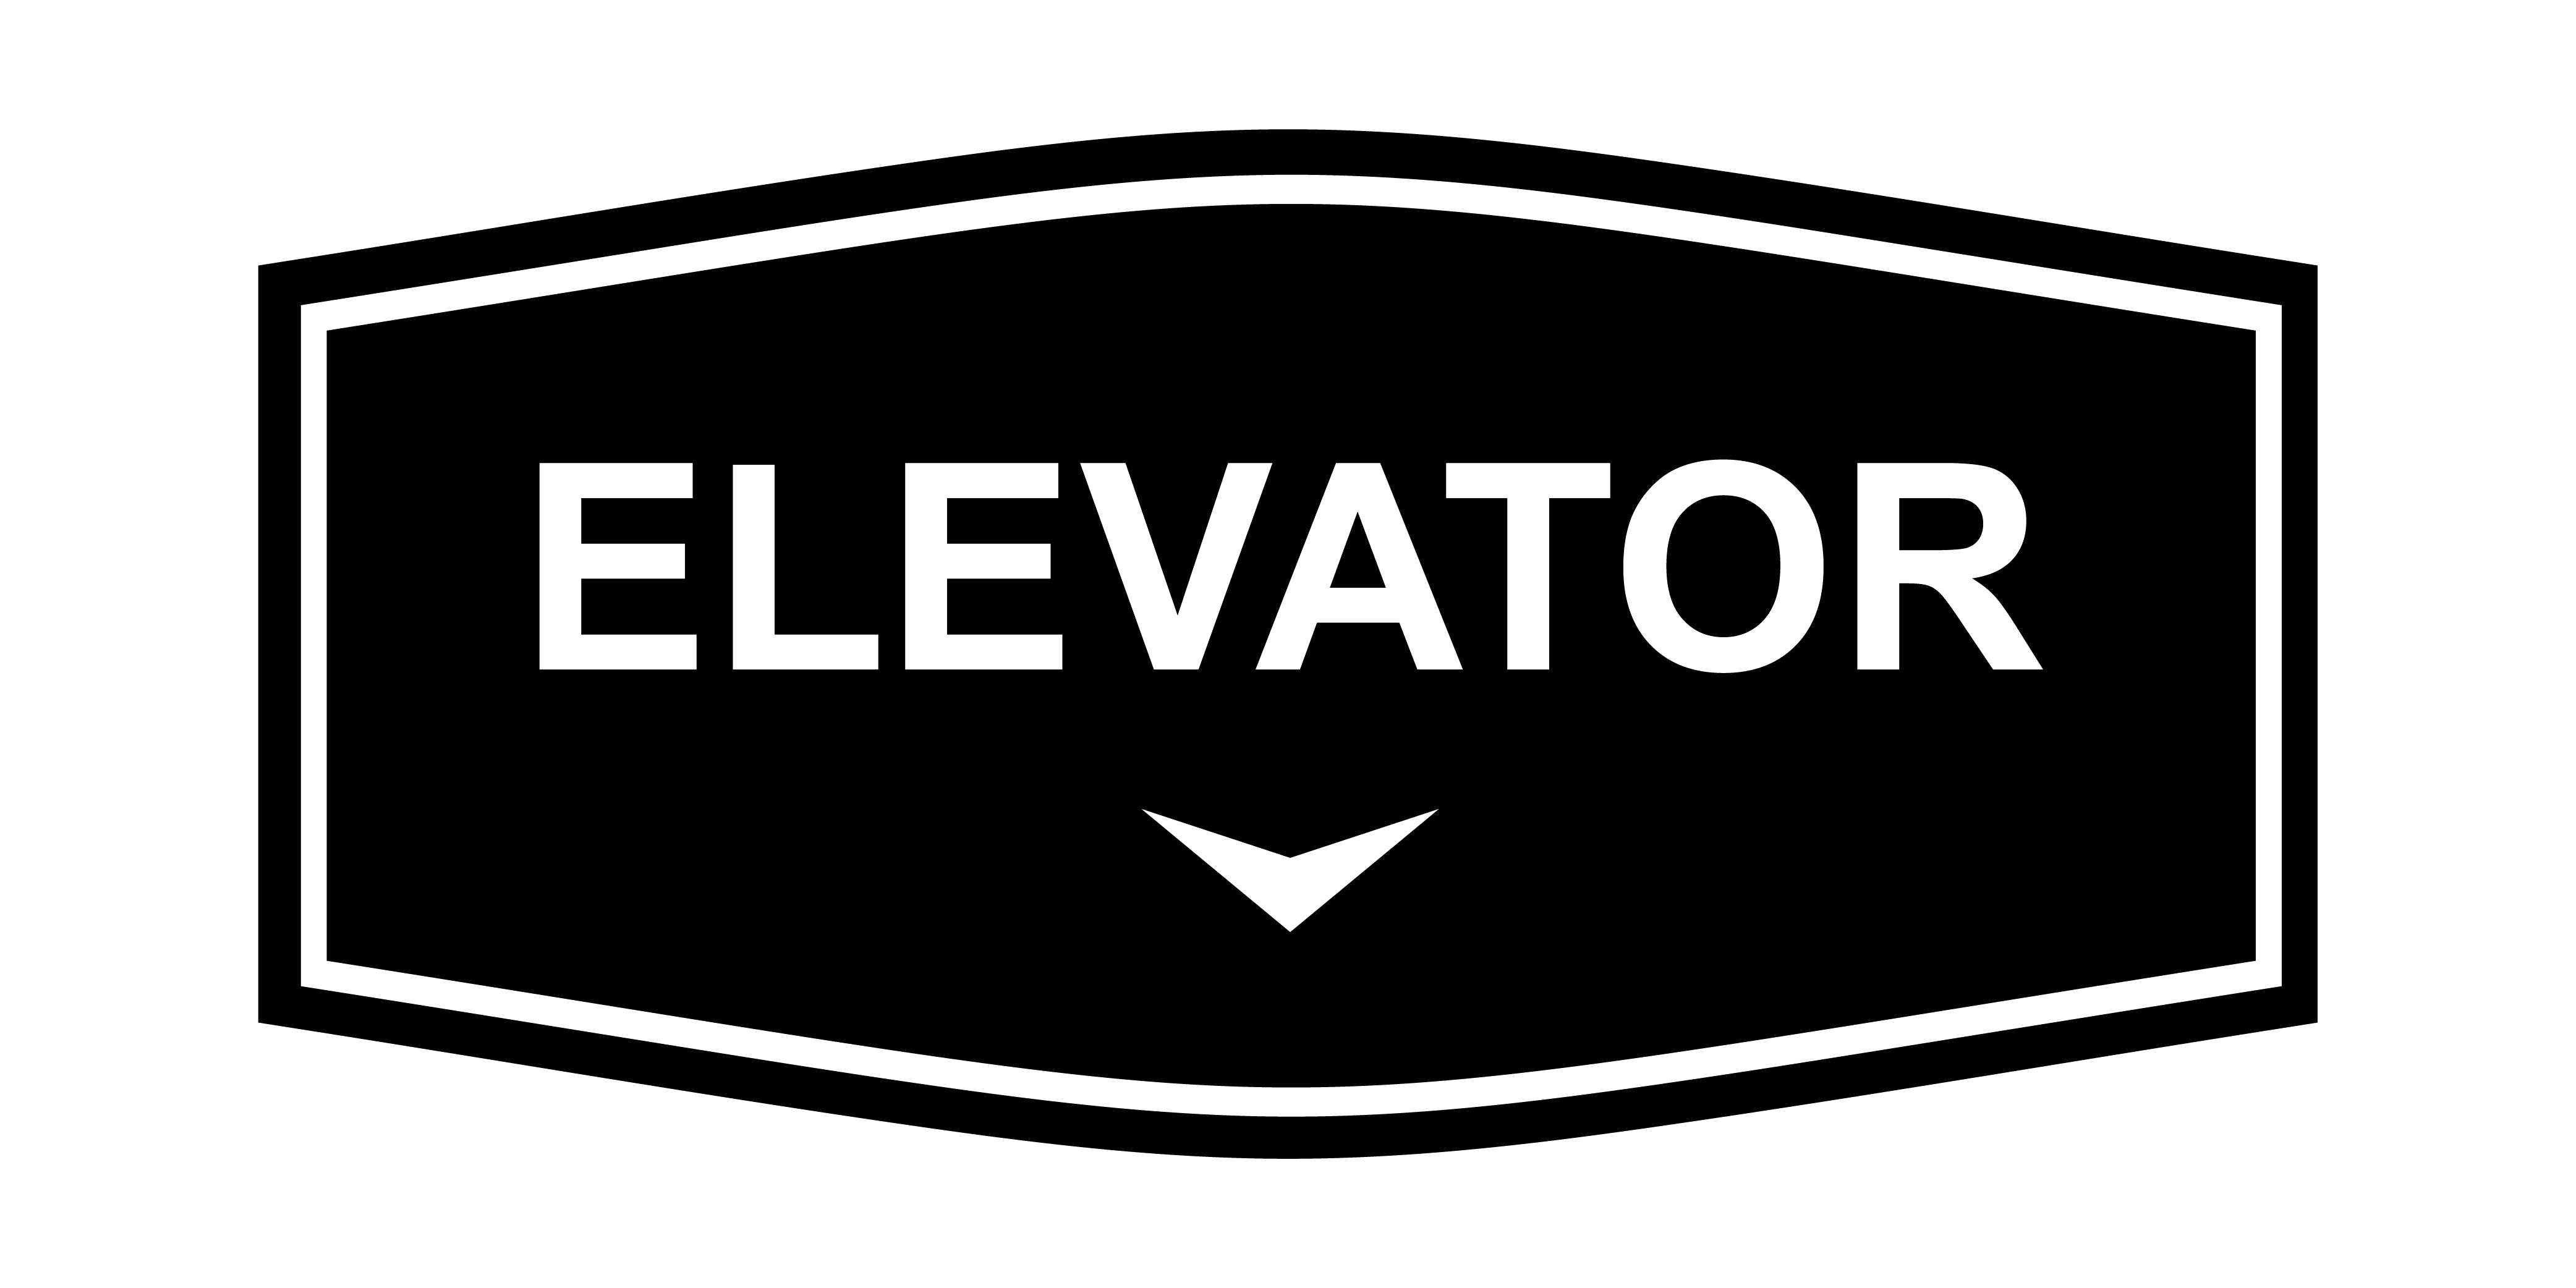 Fancy Elevator Down Arrow Wall or Door Sign